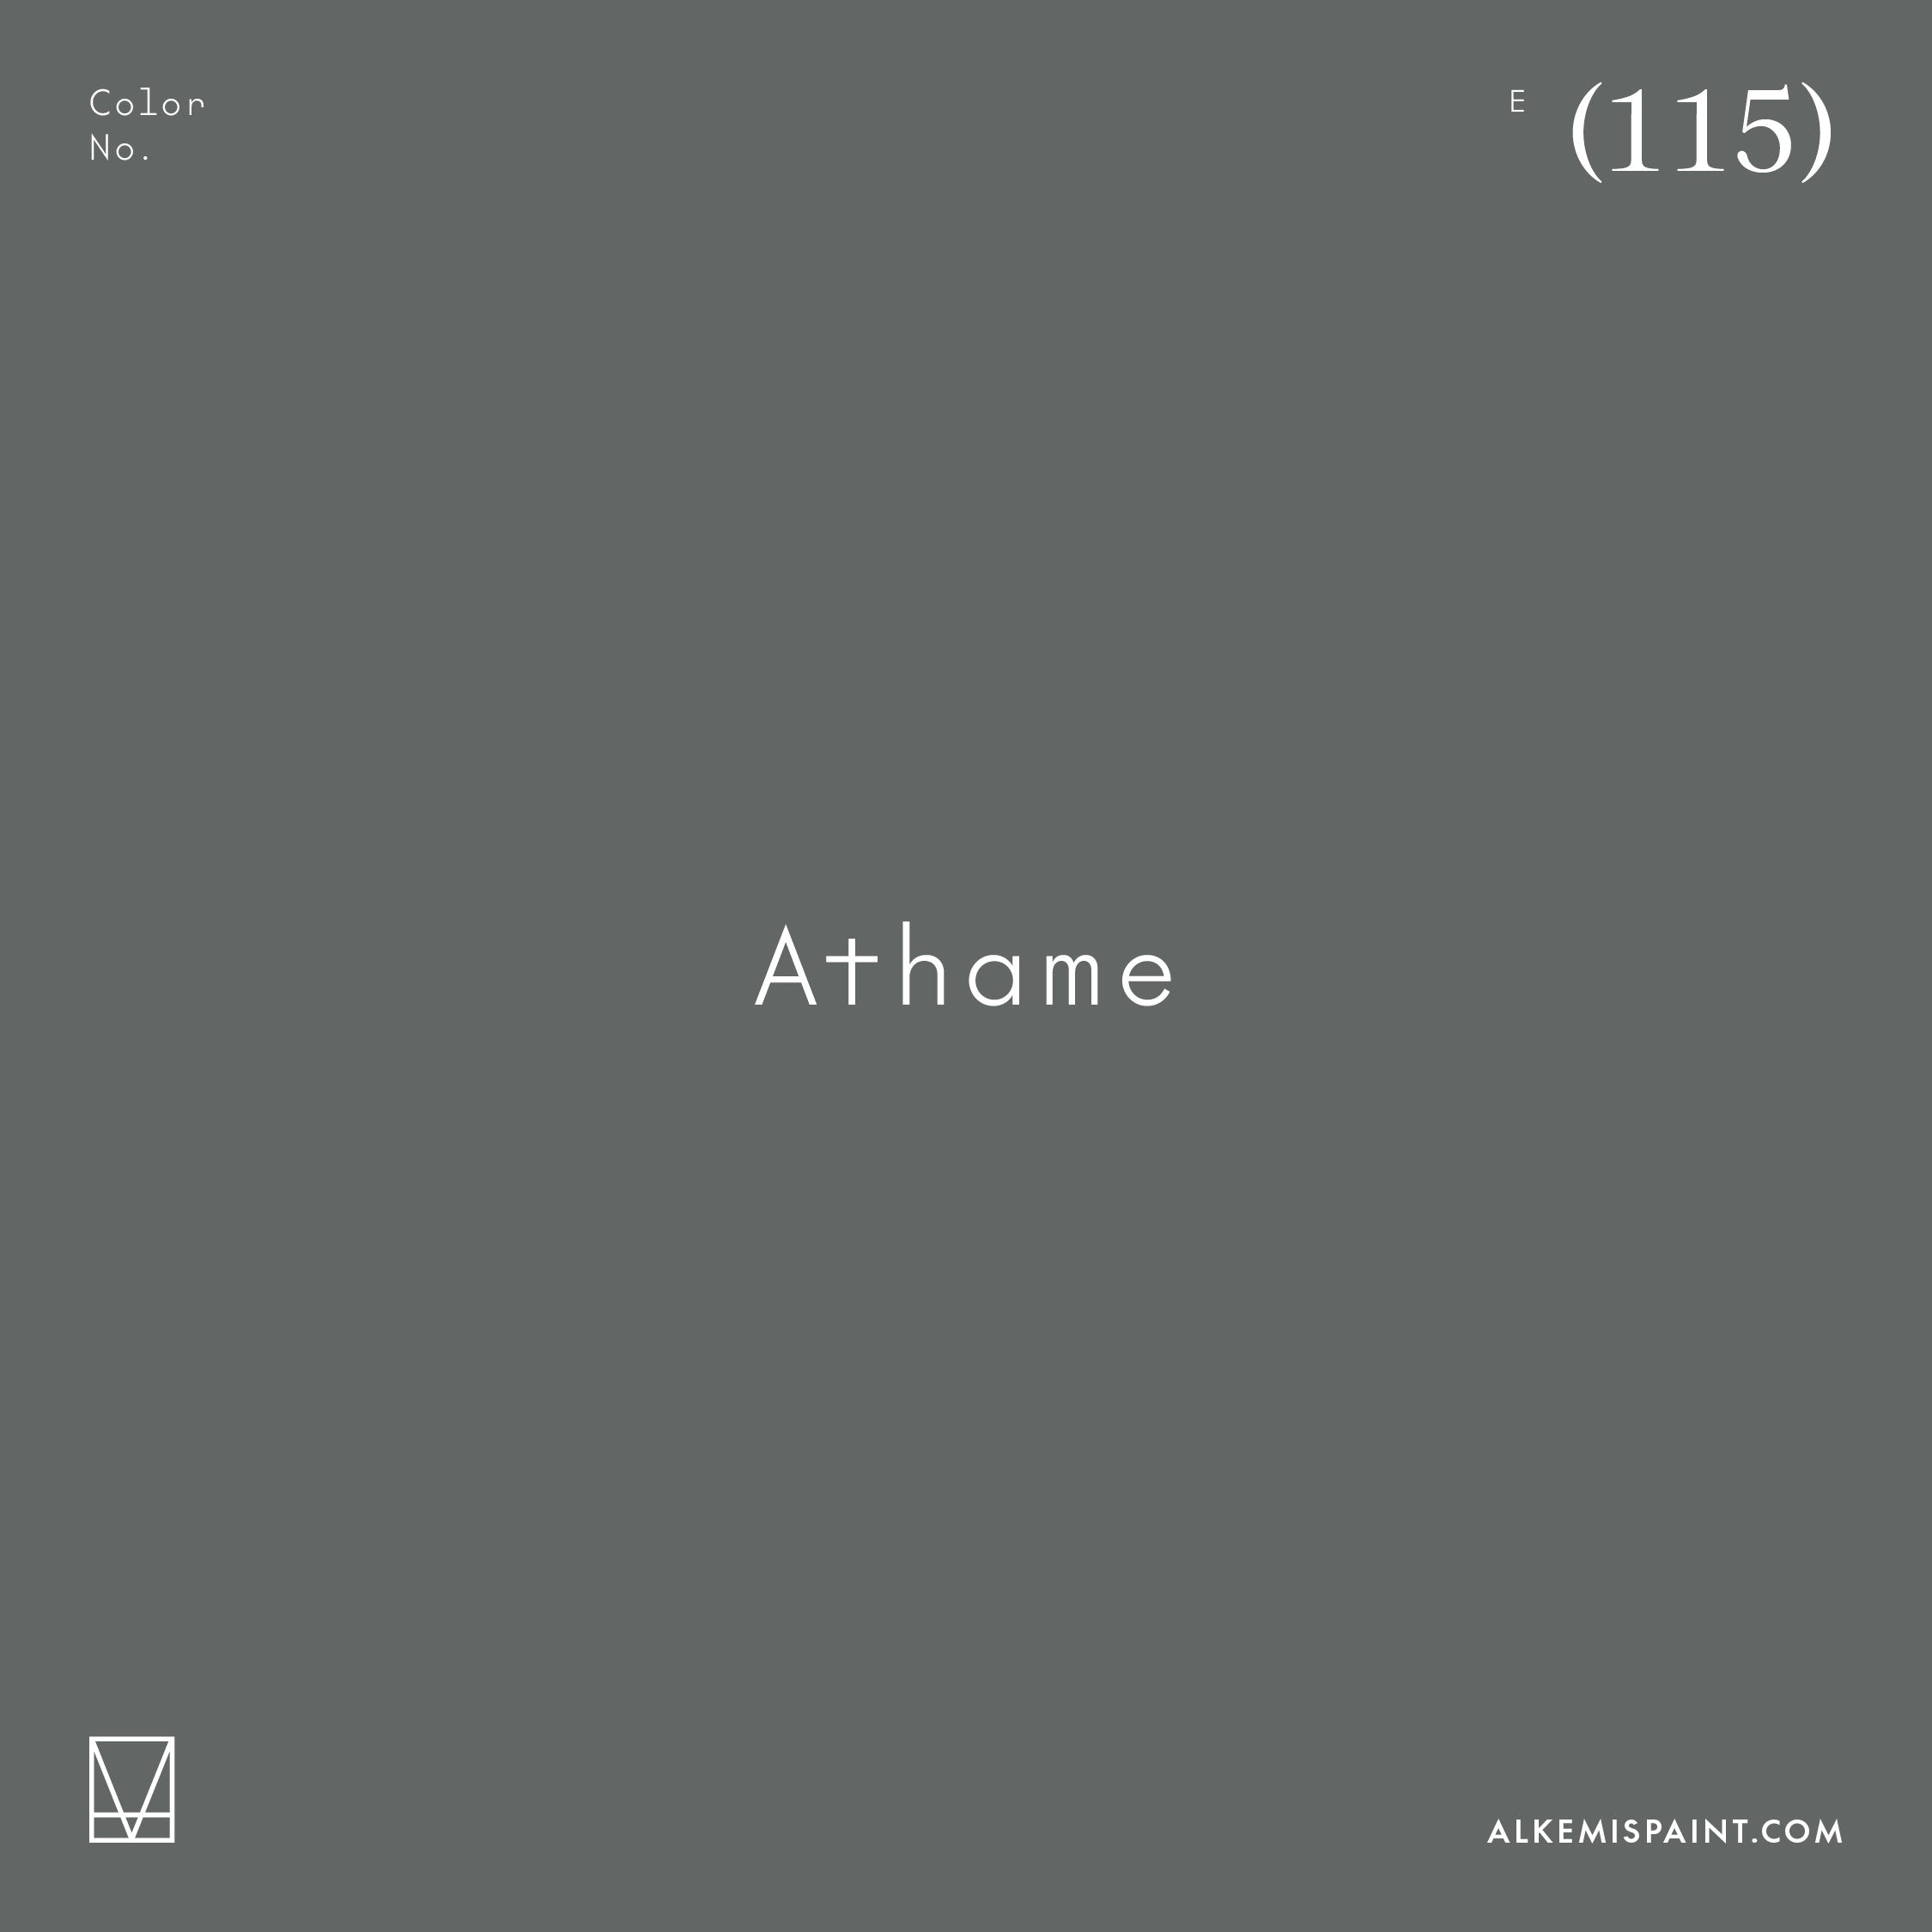 Athame (115)